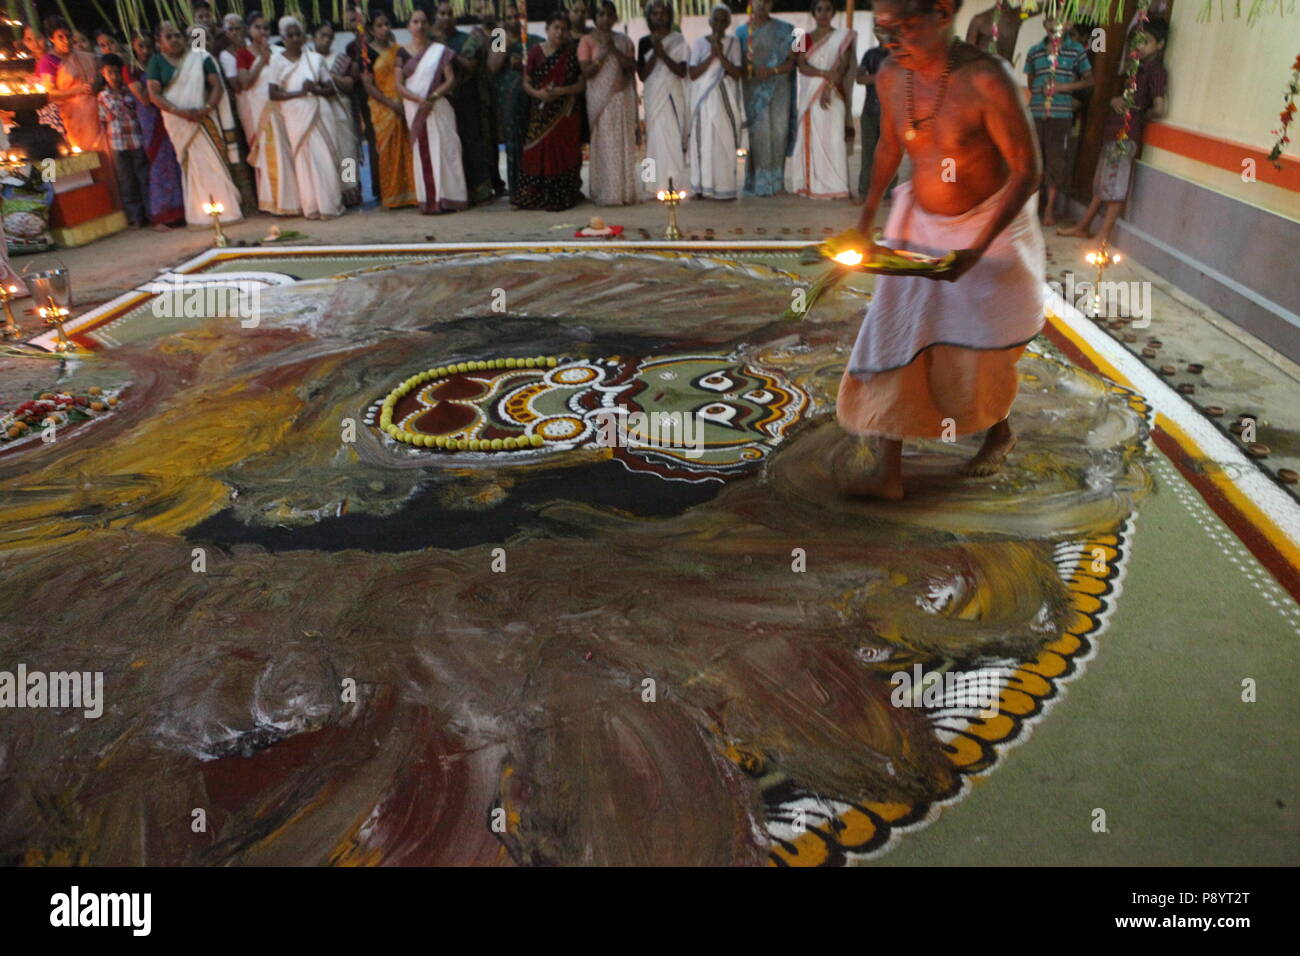 Mudiyettu ist die rituelle Kunst von Kerala, es ist die mythologische Geschichte von Krieg zwischen Göttin bhadra Kaali und Dämon darika, das Gute über das Böse Stockfoto